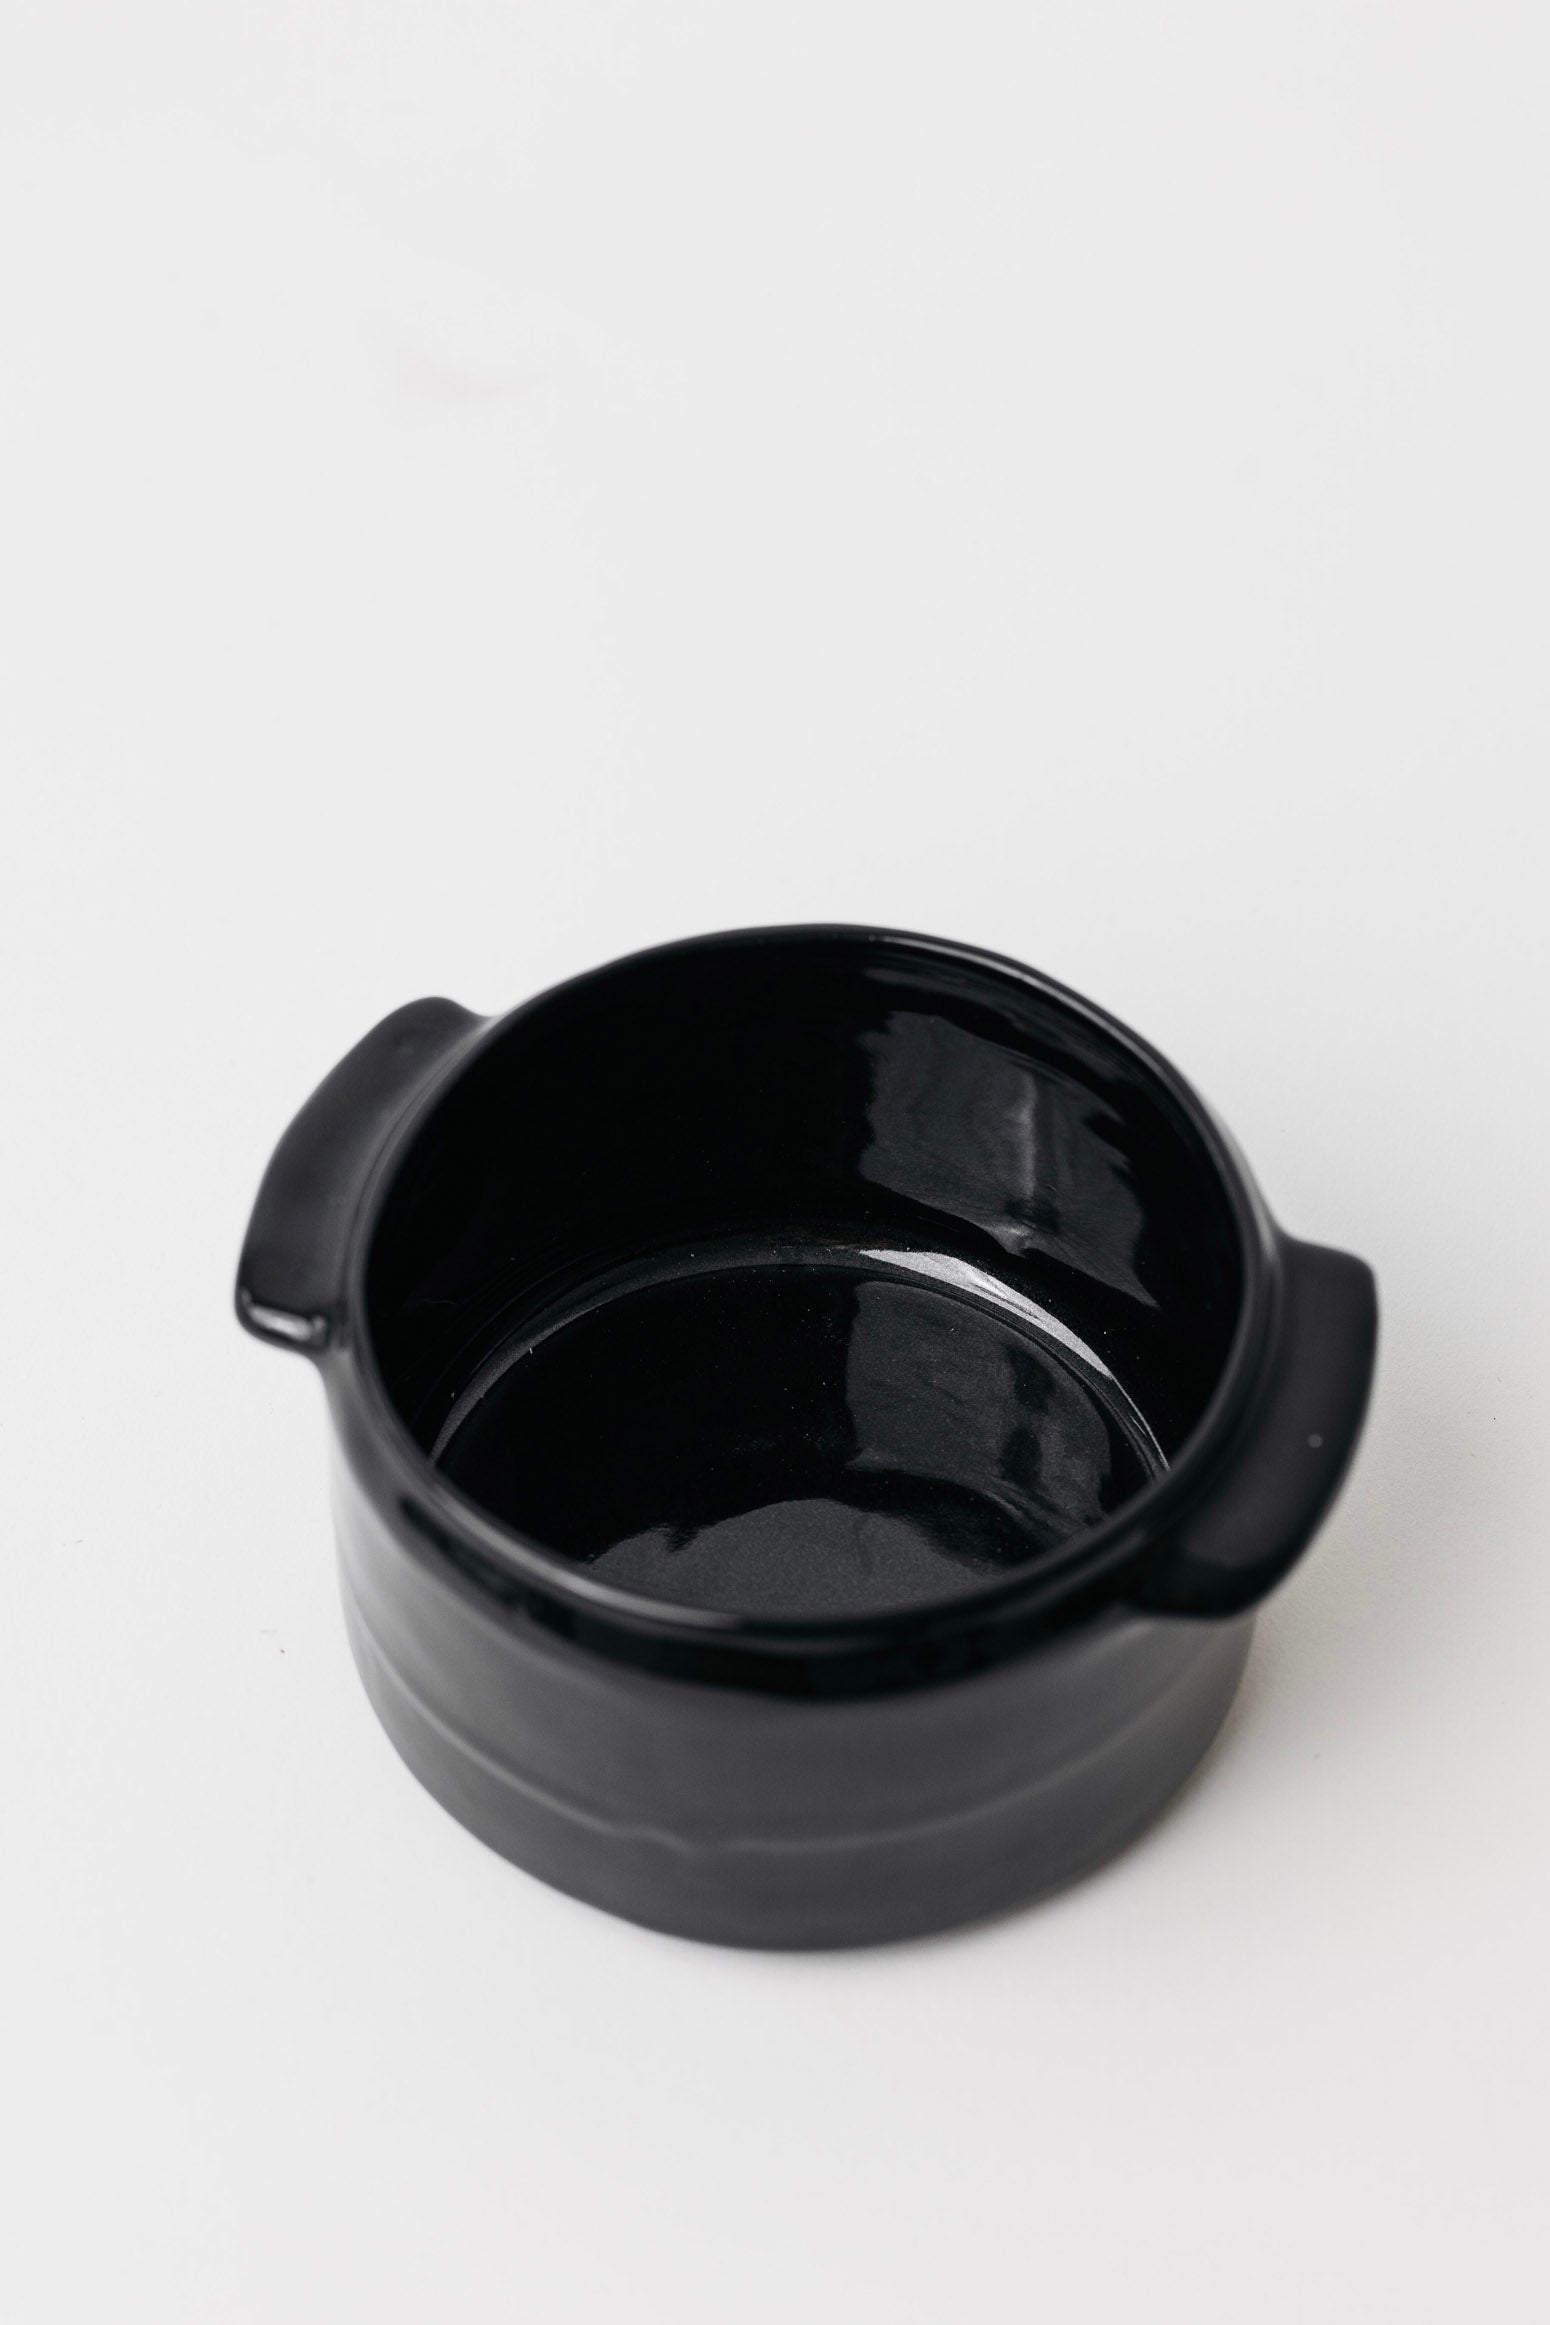 Sable Soup Bowl - Matte Black/Glossy Black - Set of 4